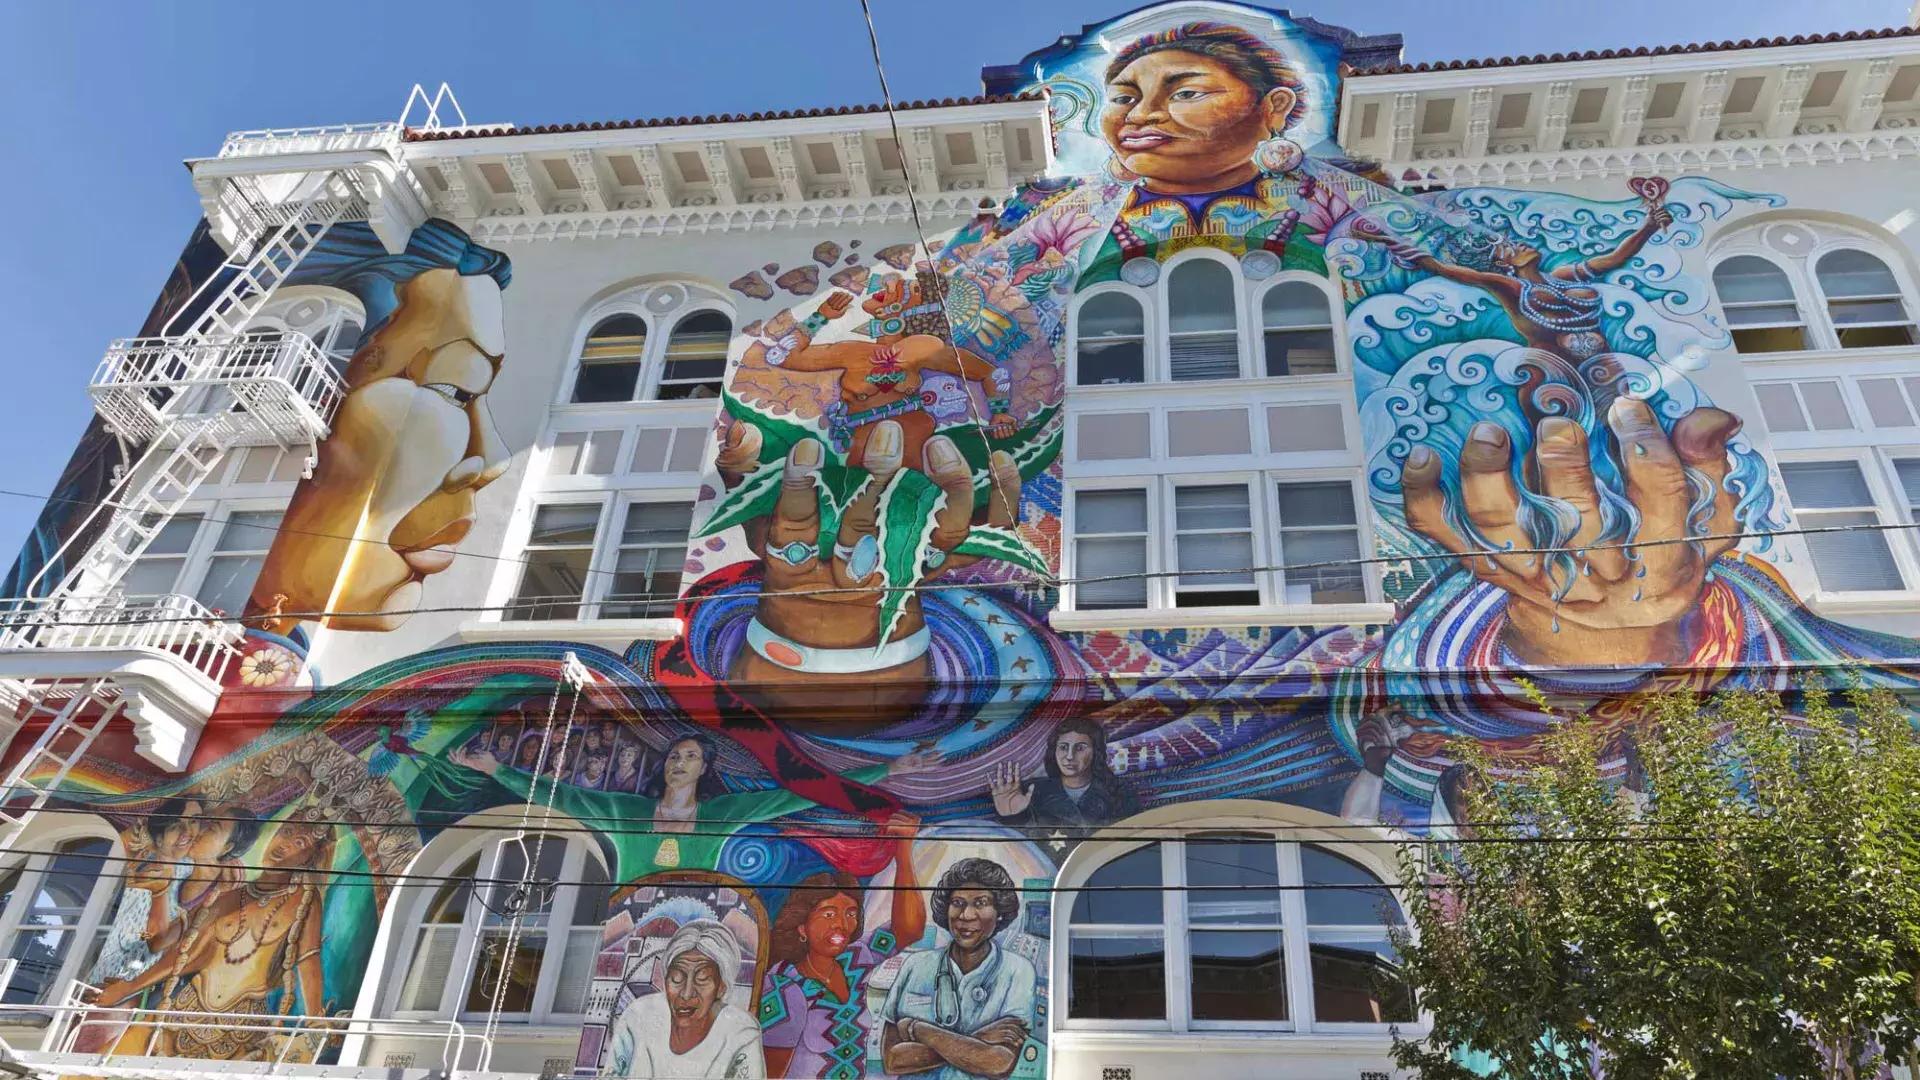 贝博体彩app教会区(San Francisco Mission District)妇女大厦(Women ' s Building)的一侧覆盖着一幅大型彩色壁画。.